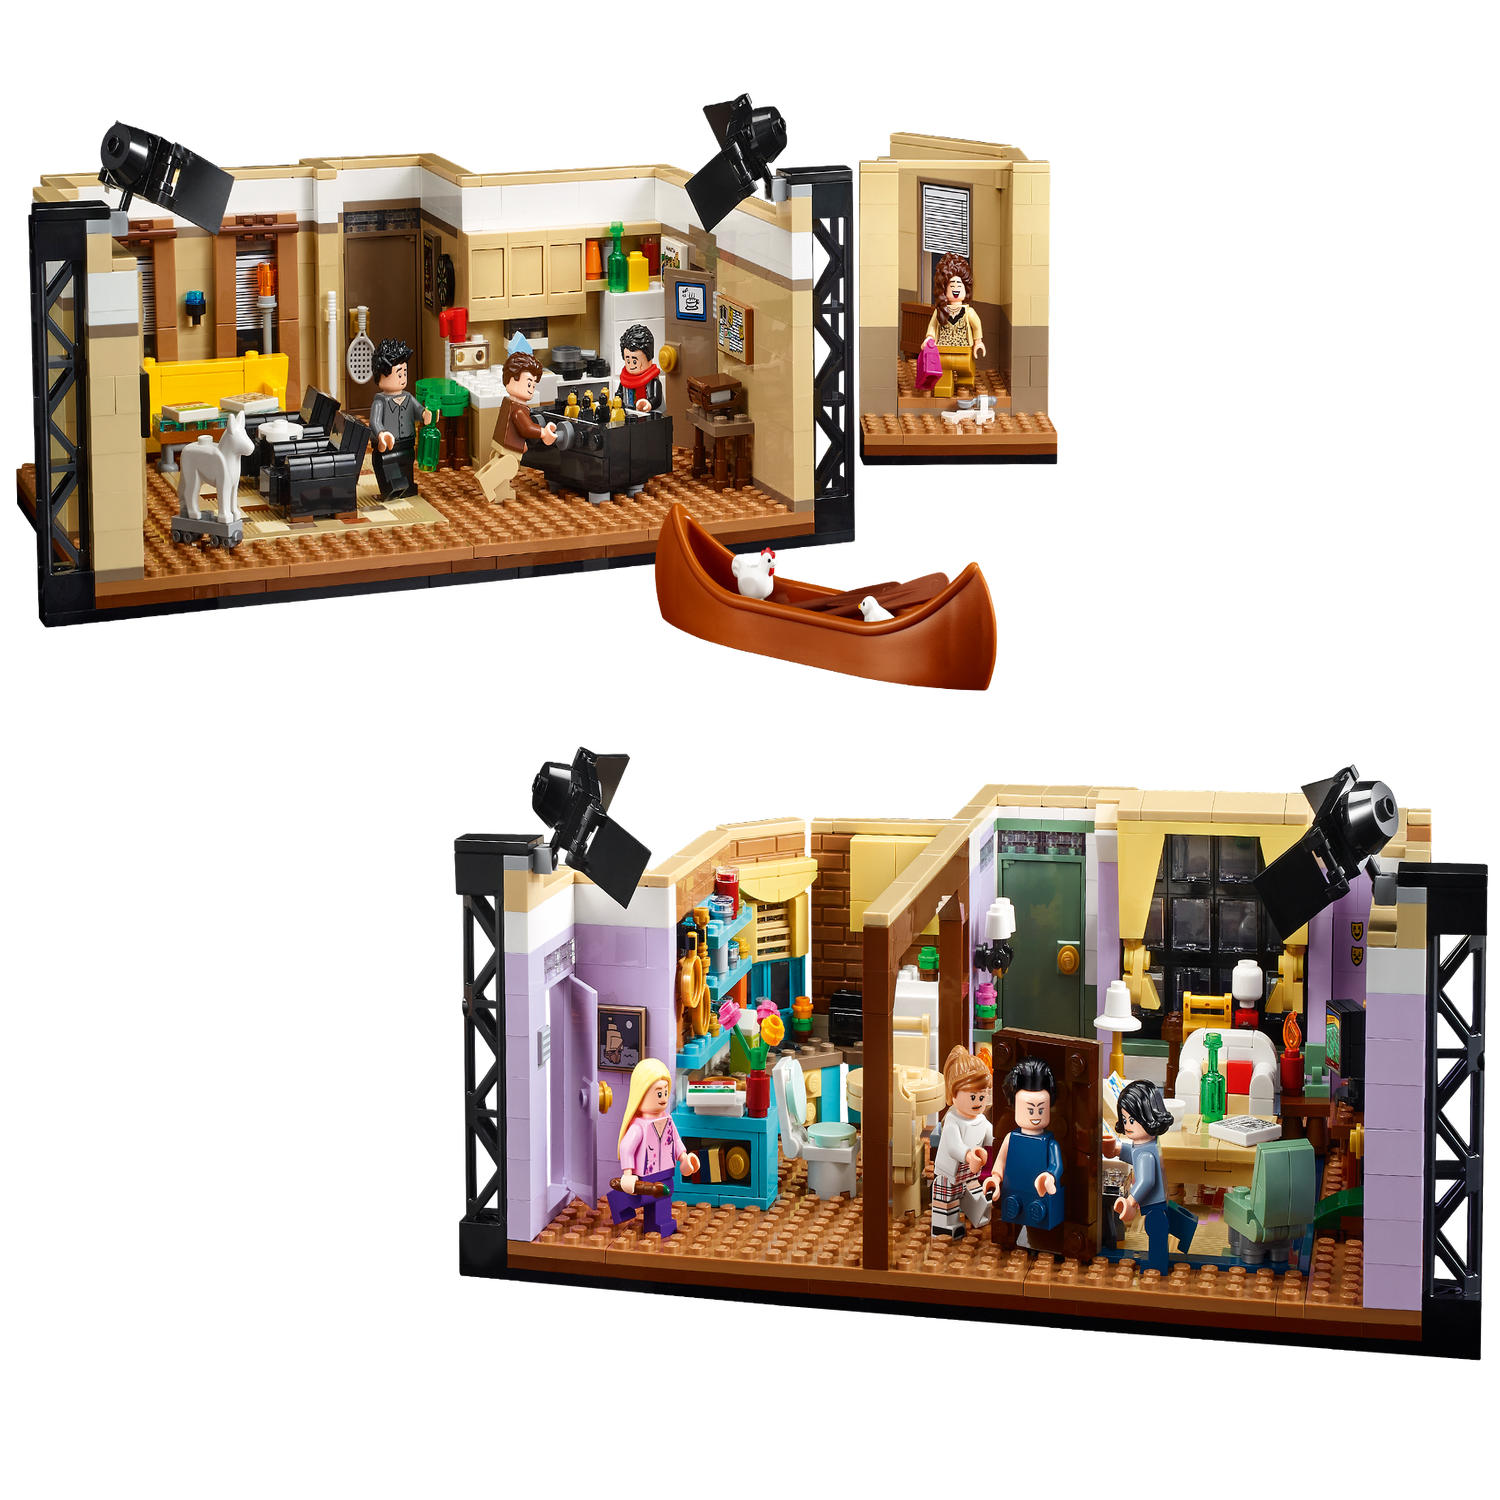 Lego Les Appartements Friends: les offres